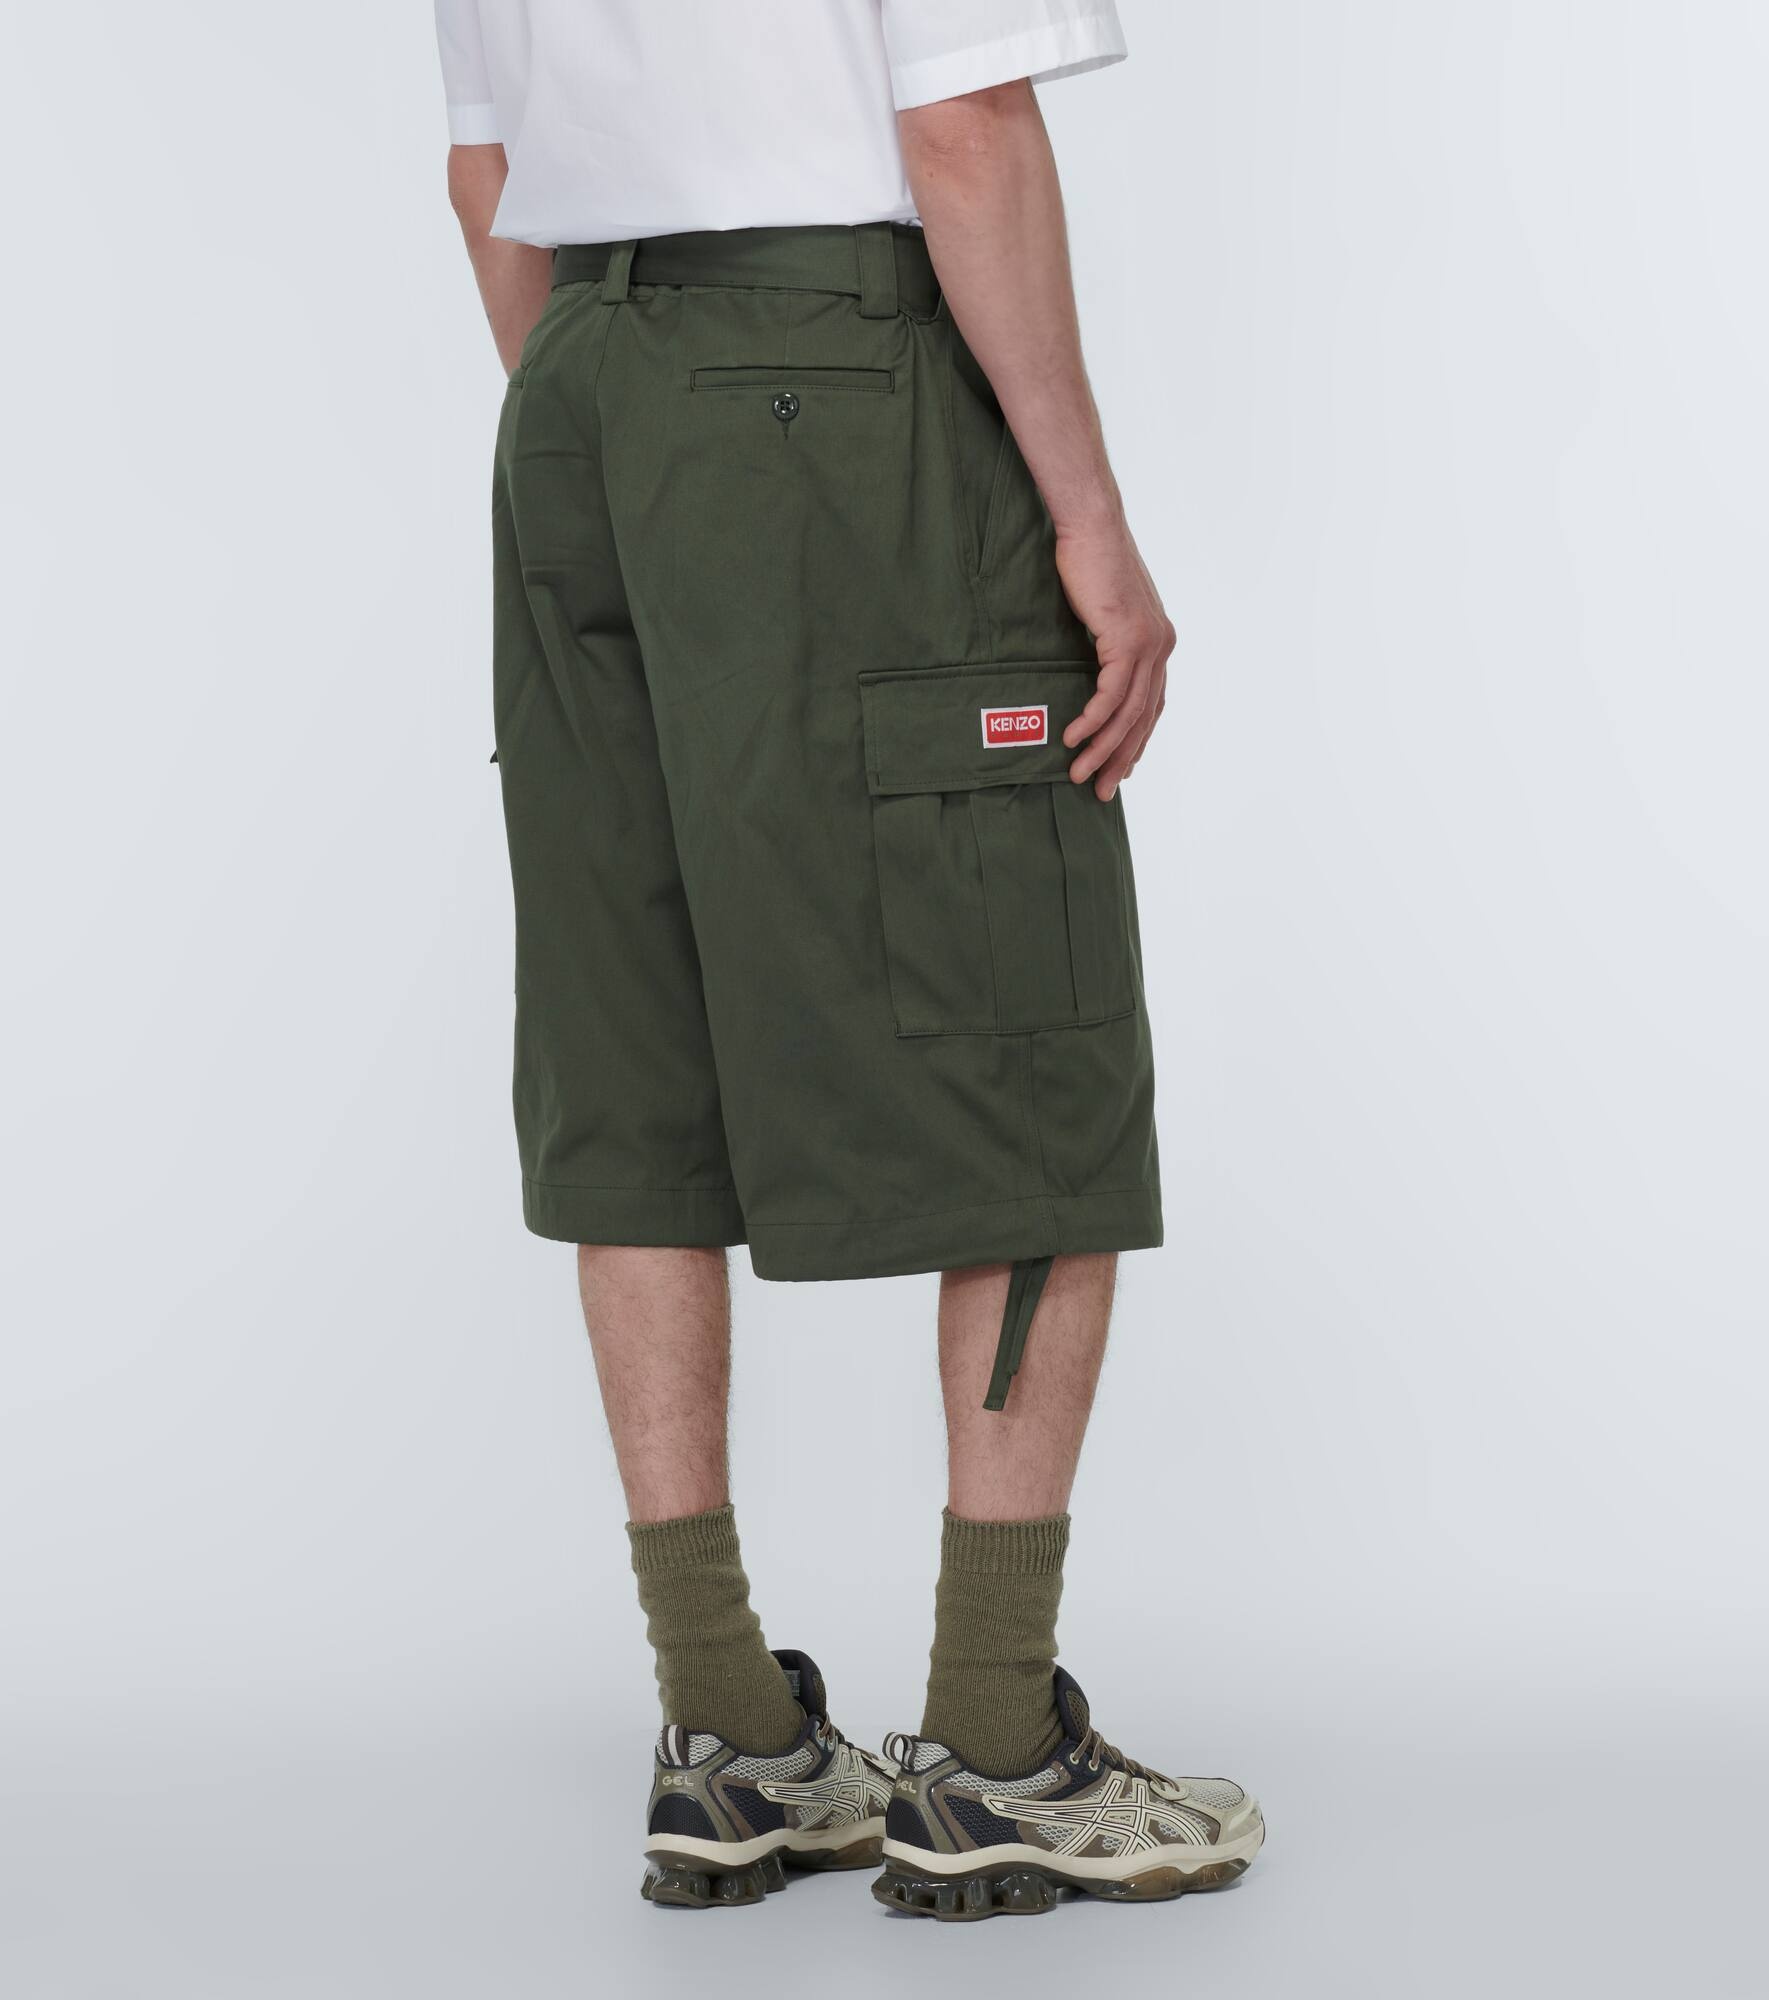 Cotton cargo shorts - 4